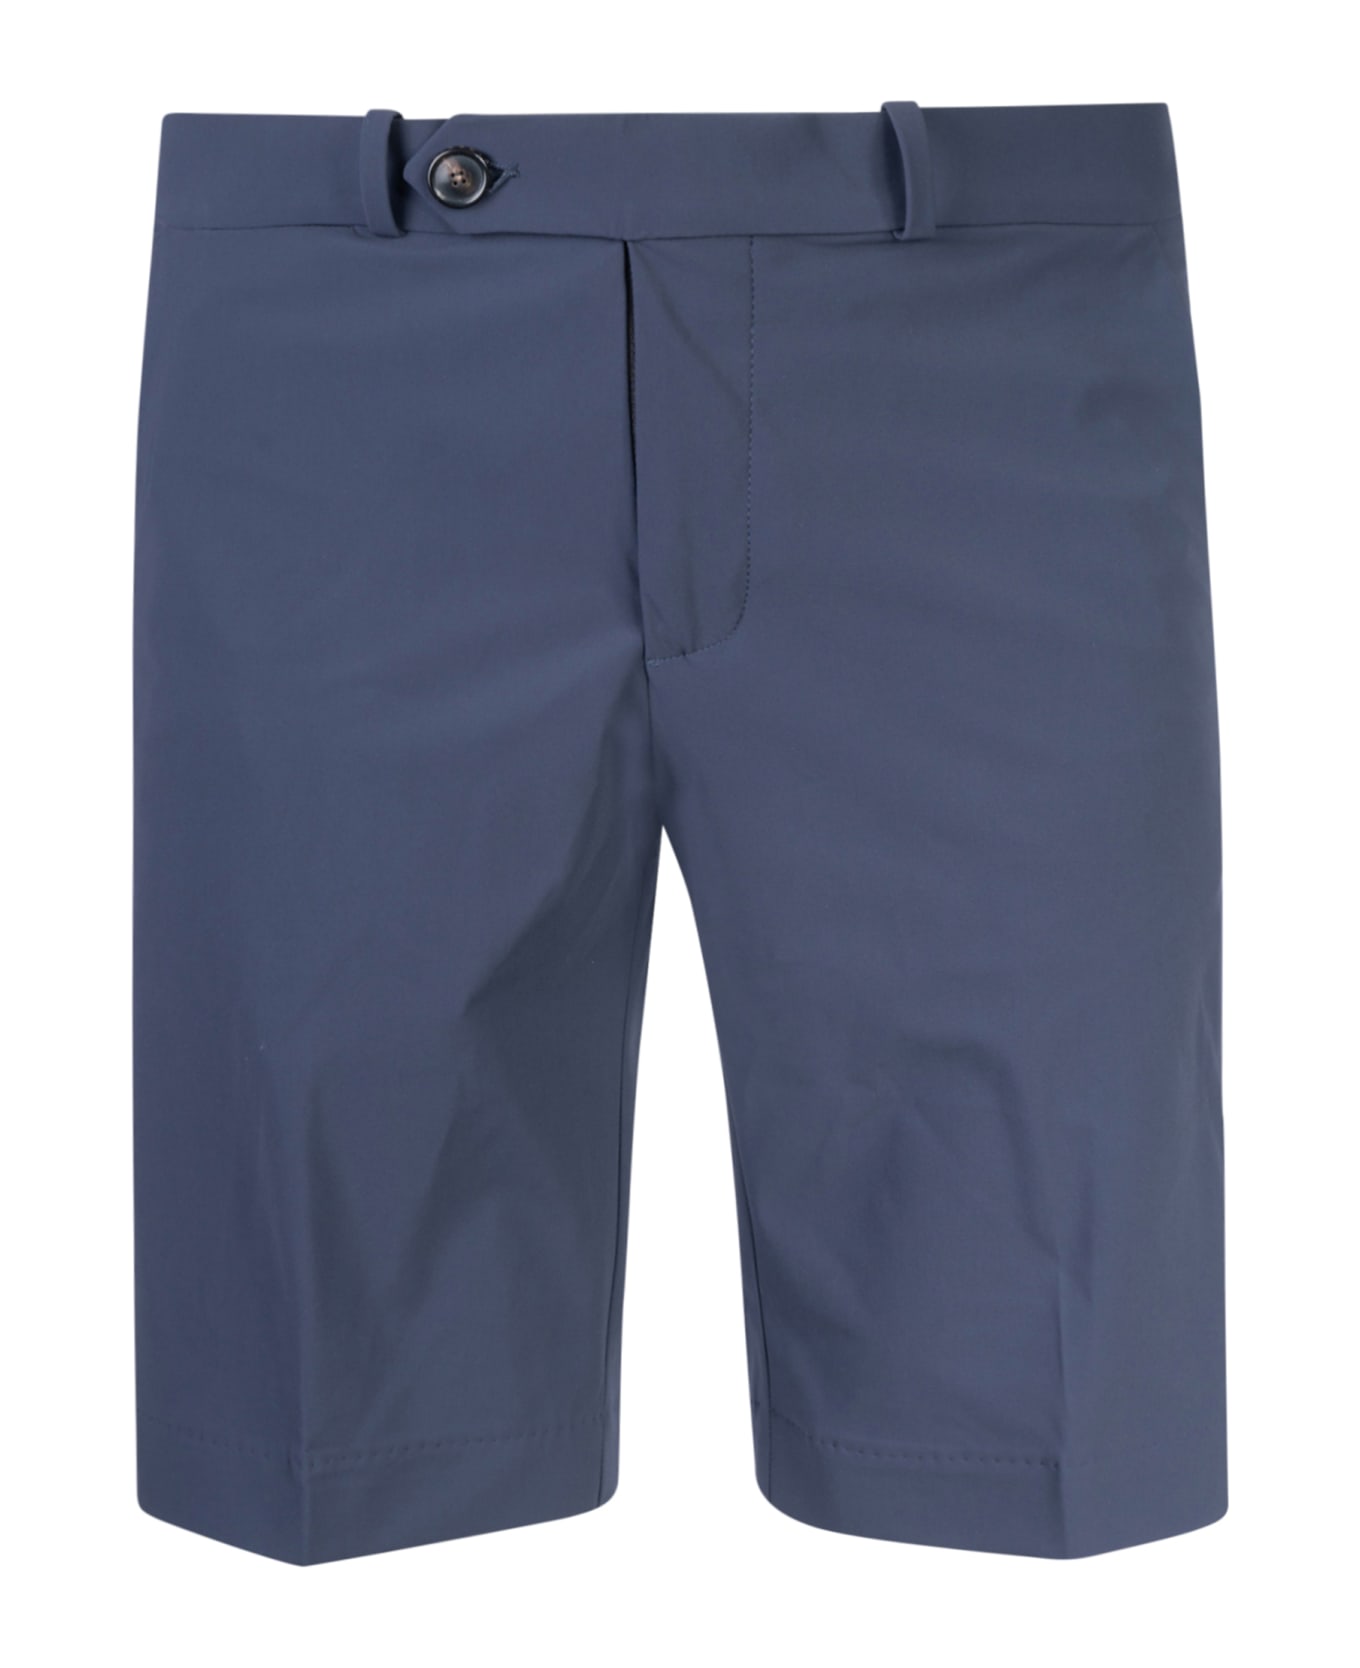 RRD - Roberto Ricci Design Revo Chino Trousers - Blue